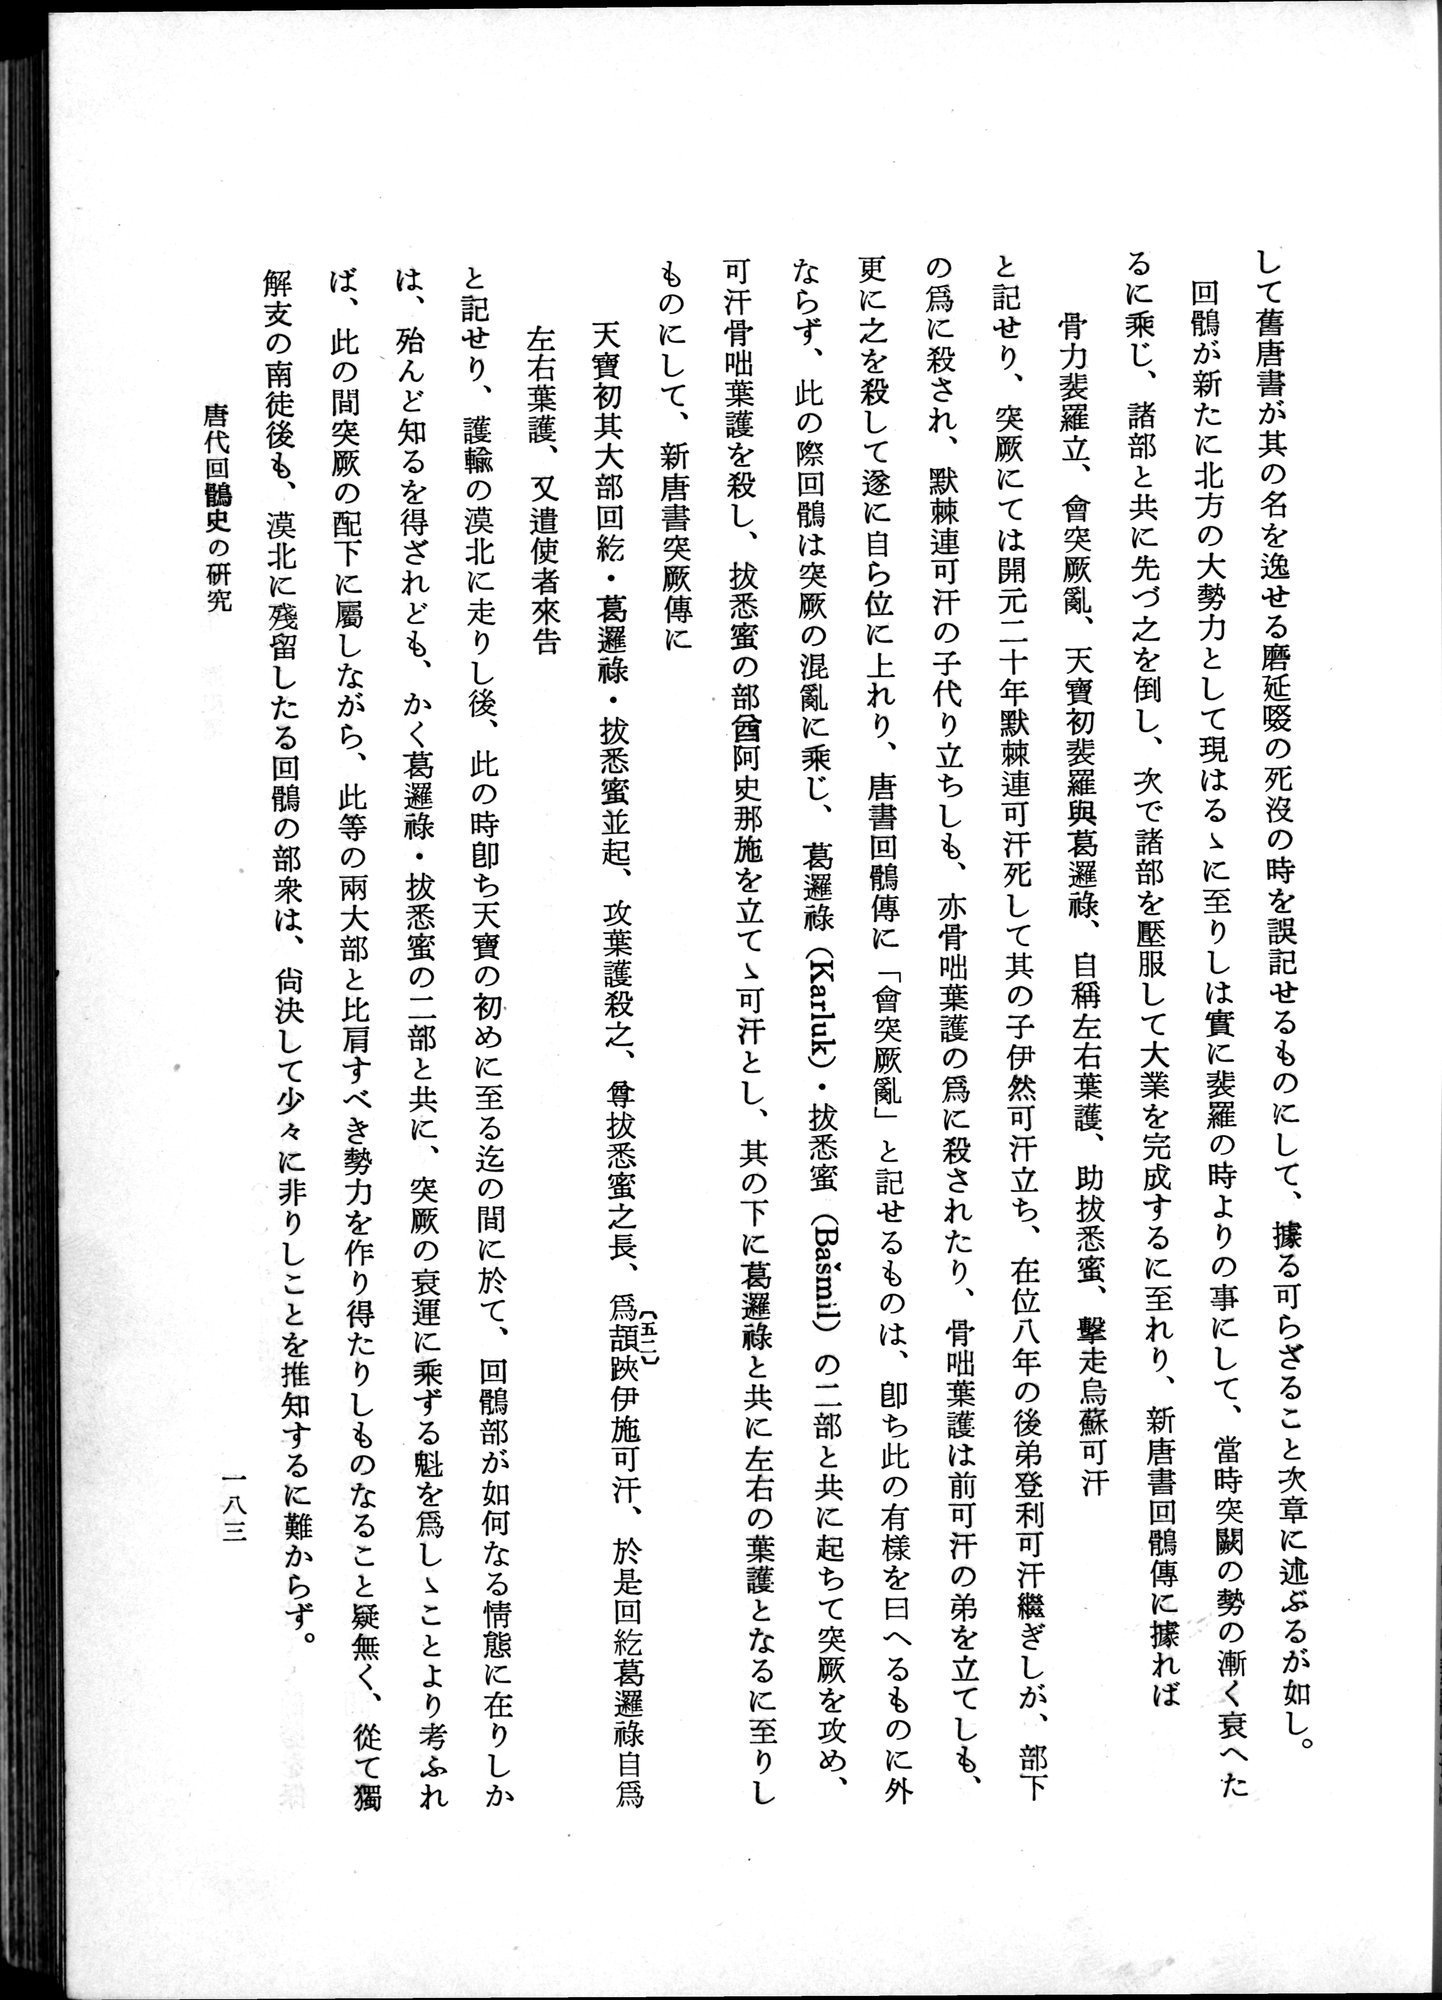 羽田博士史学論文集 : vol.1 / Page 221 (Grayscale High Resolution Image)